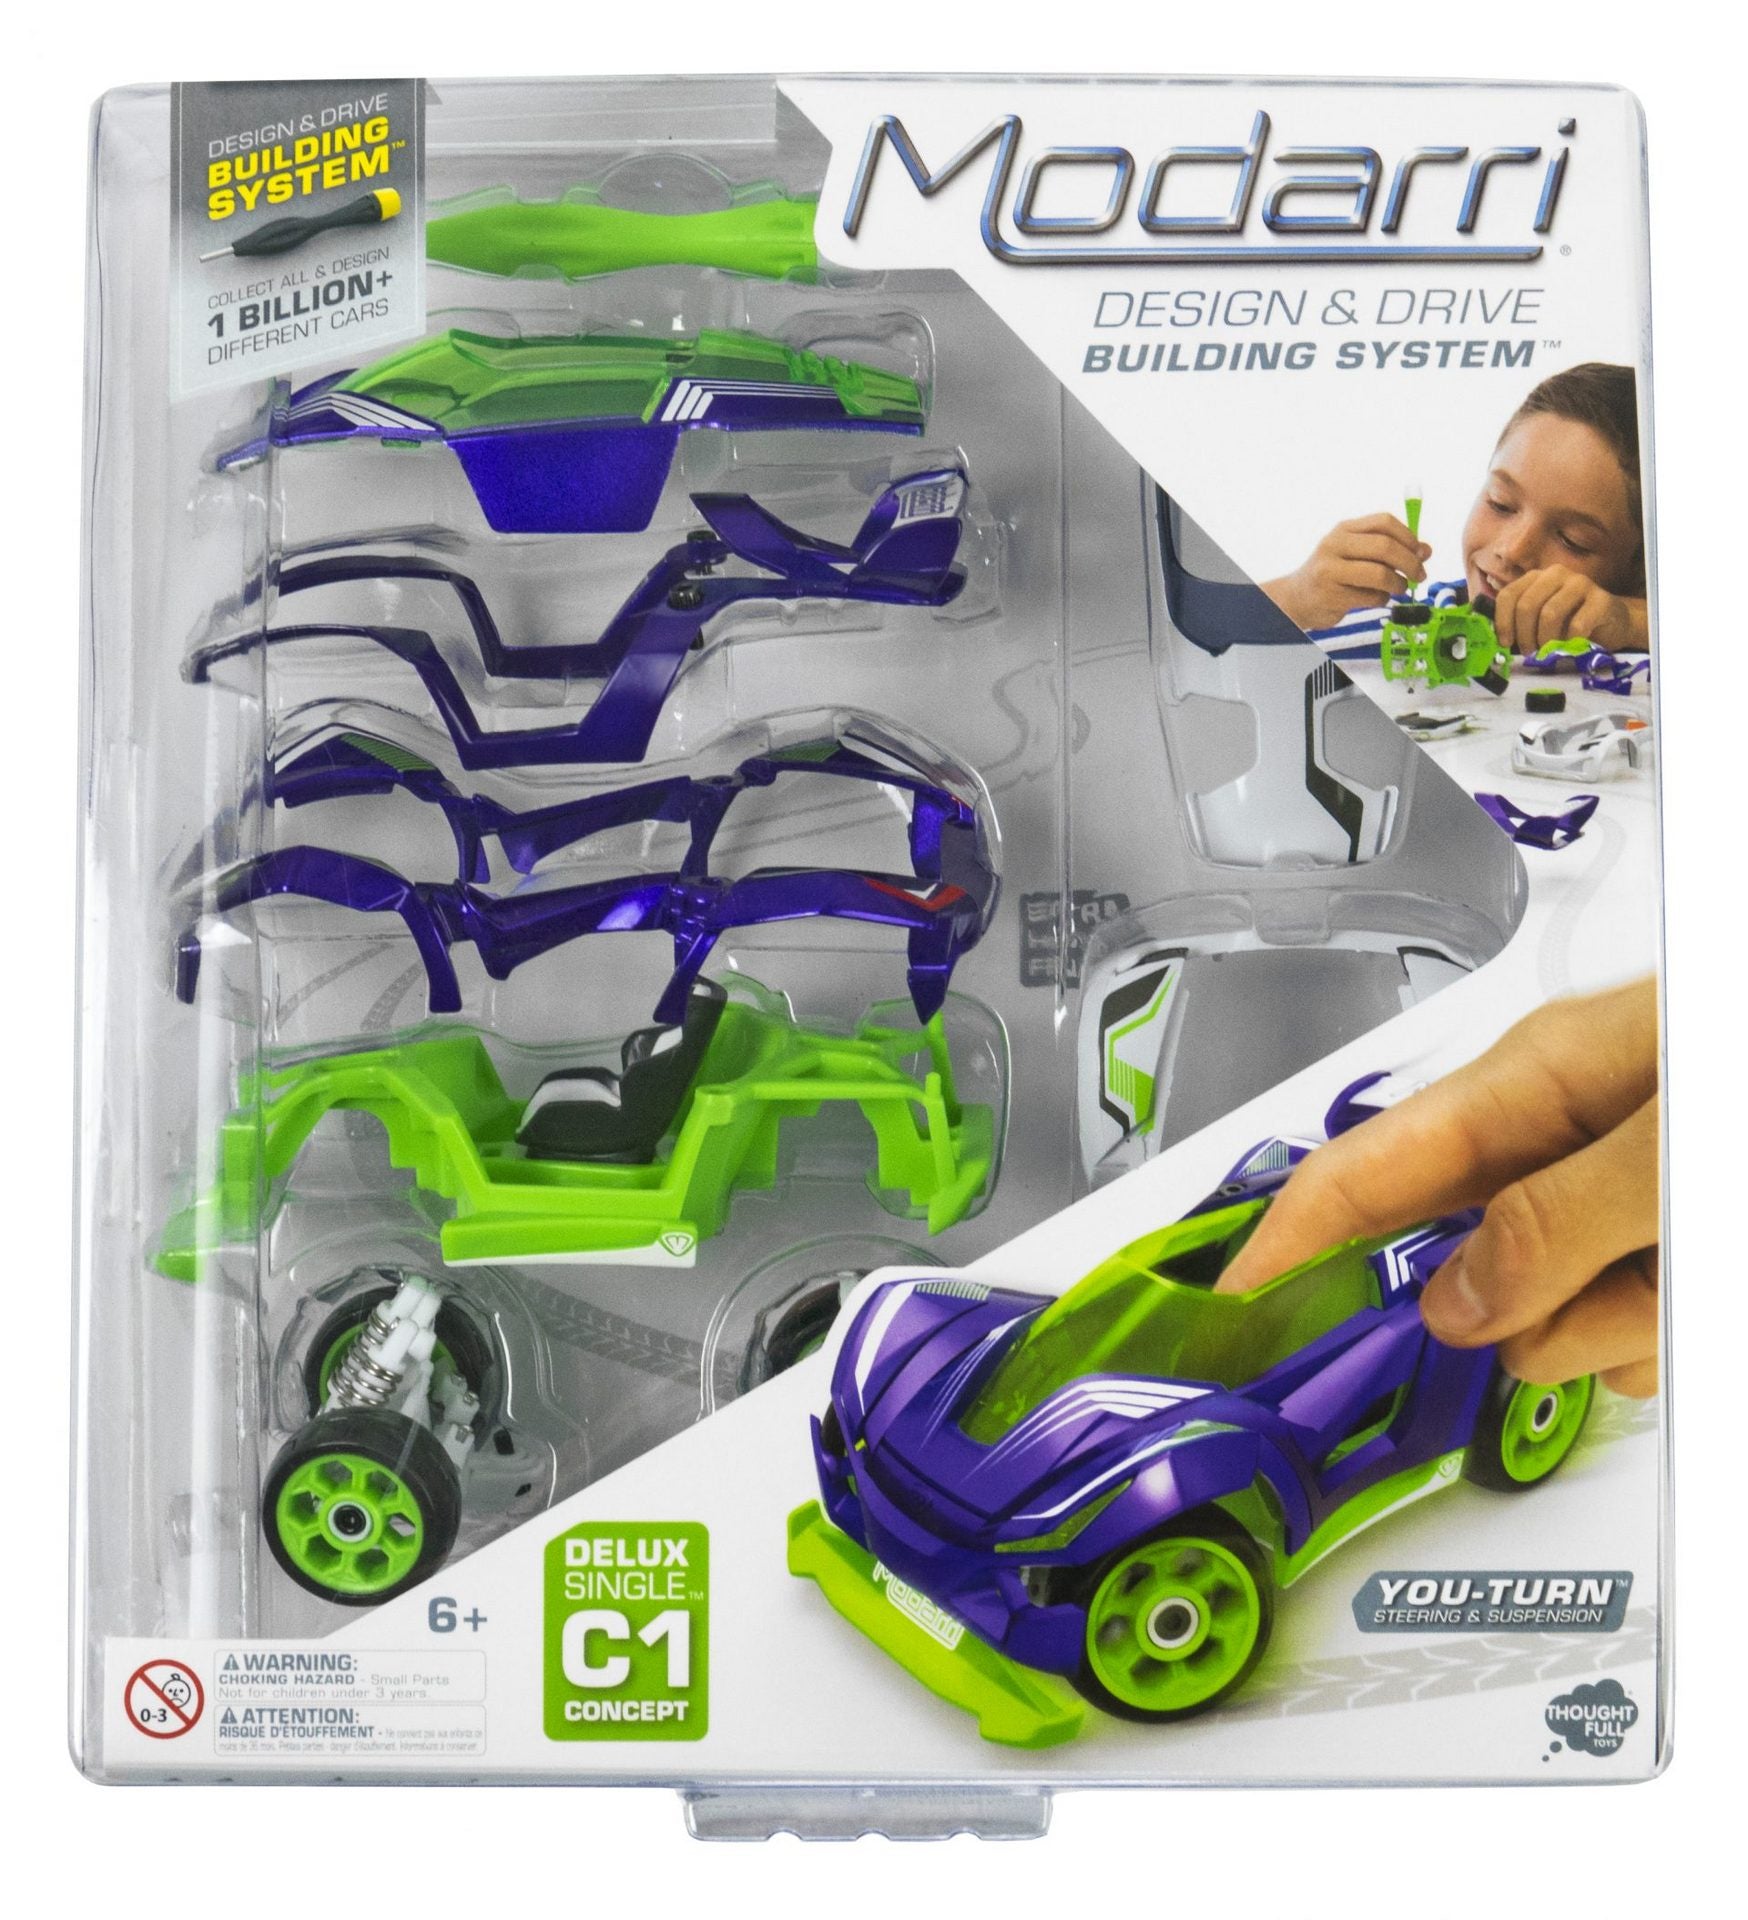 modarri design and drive